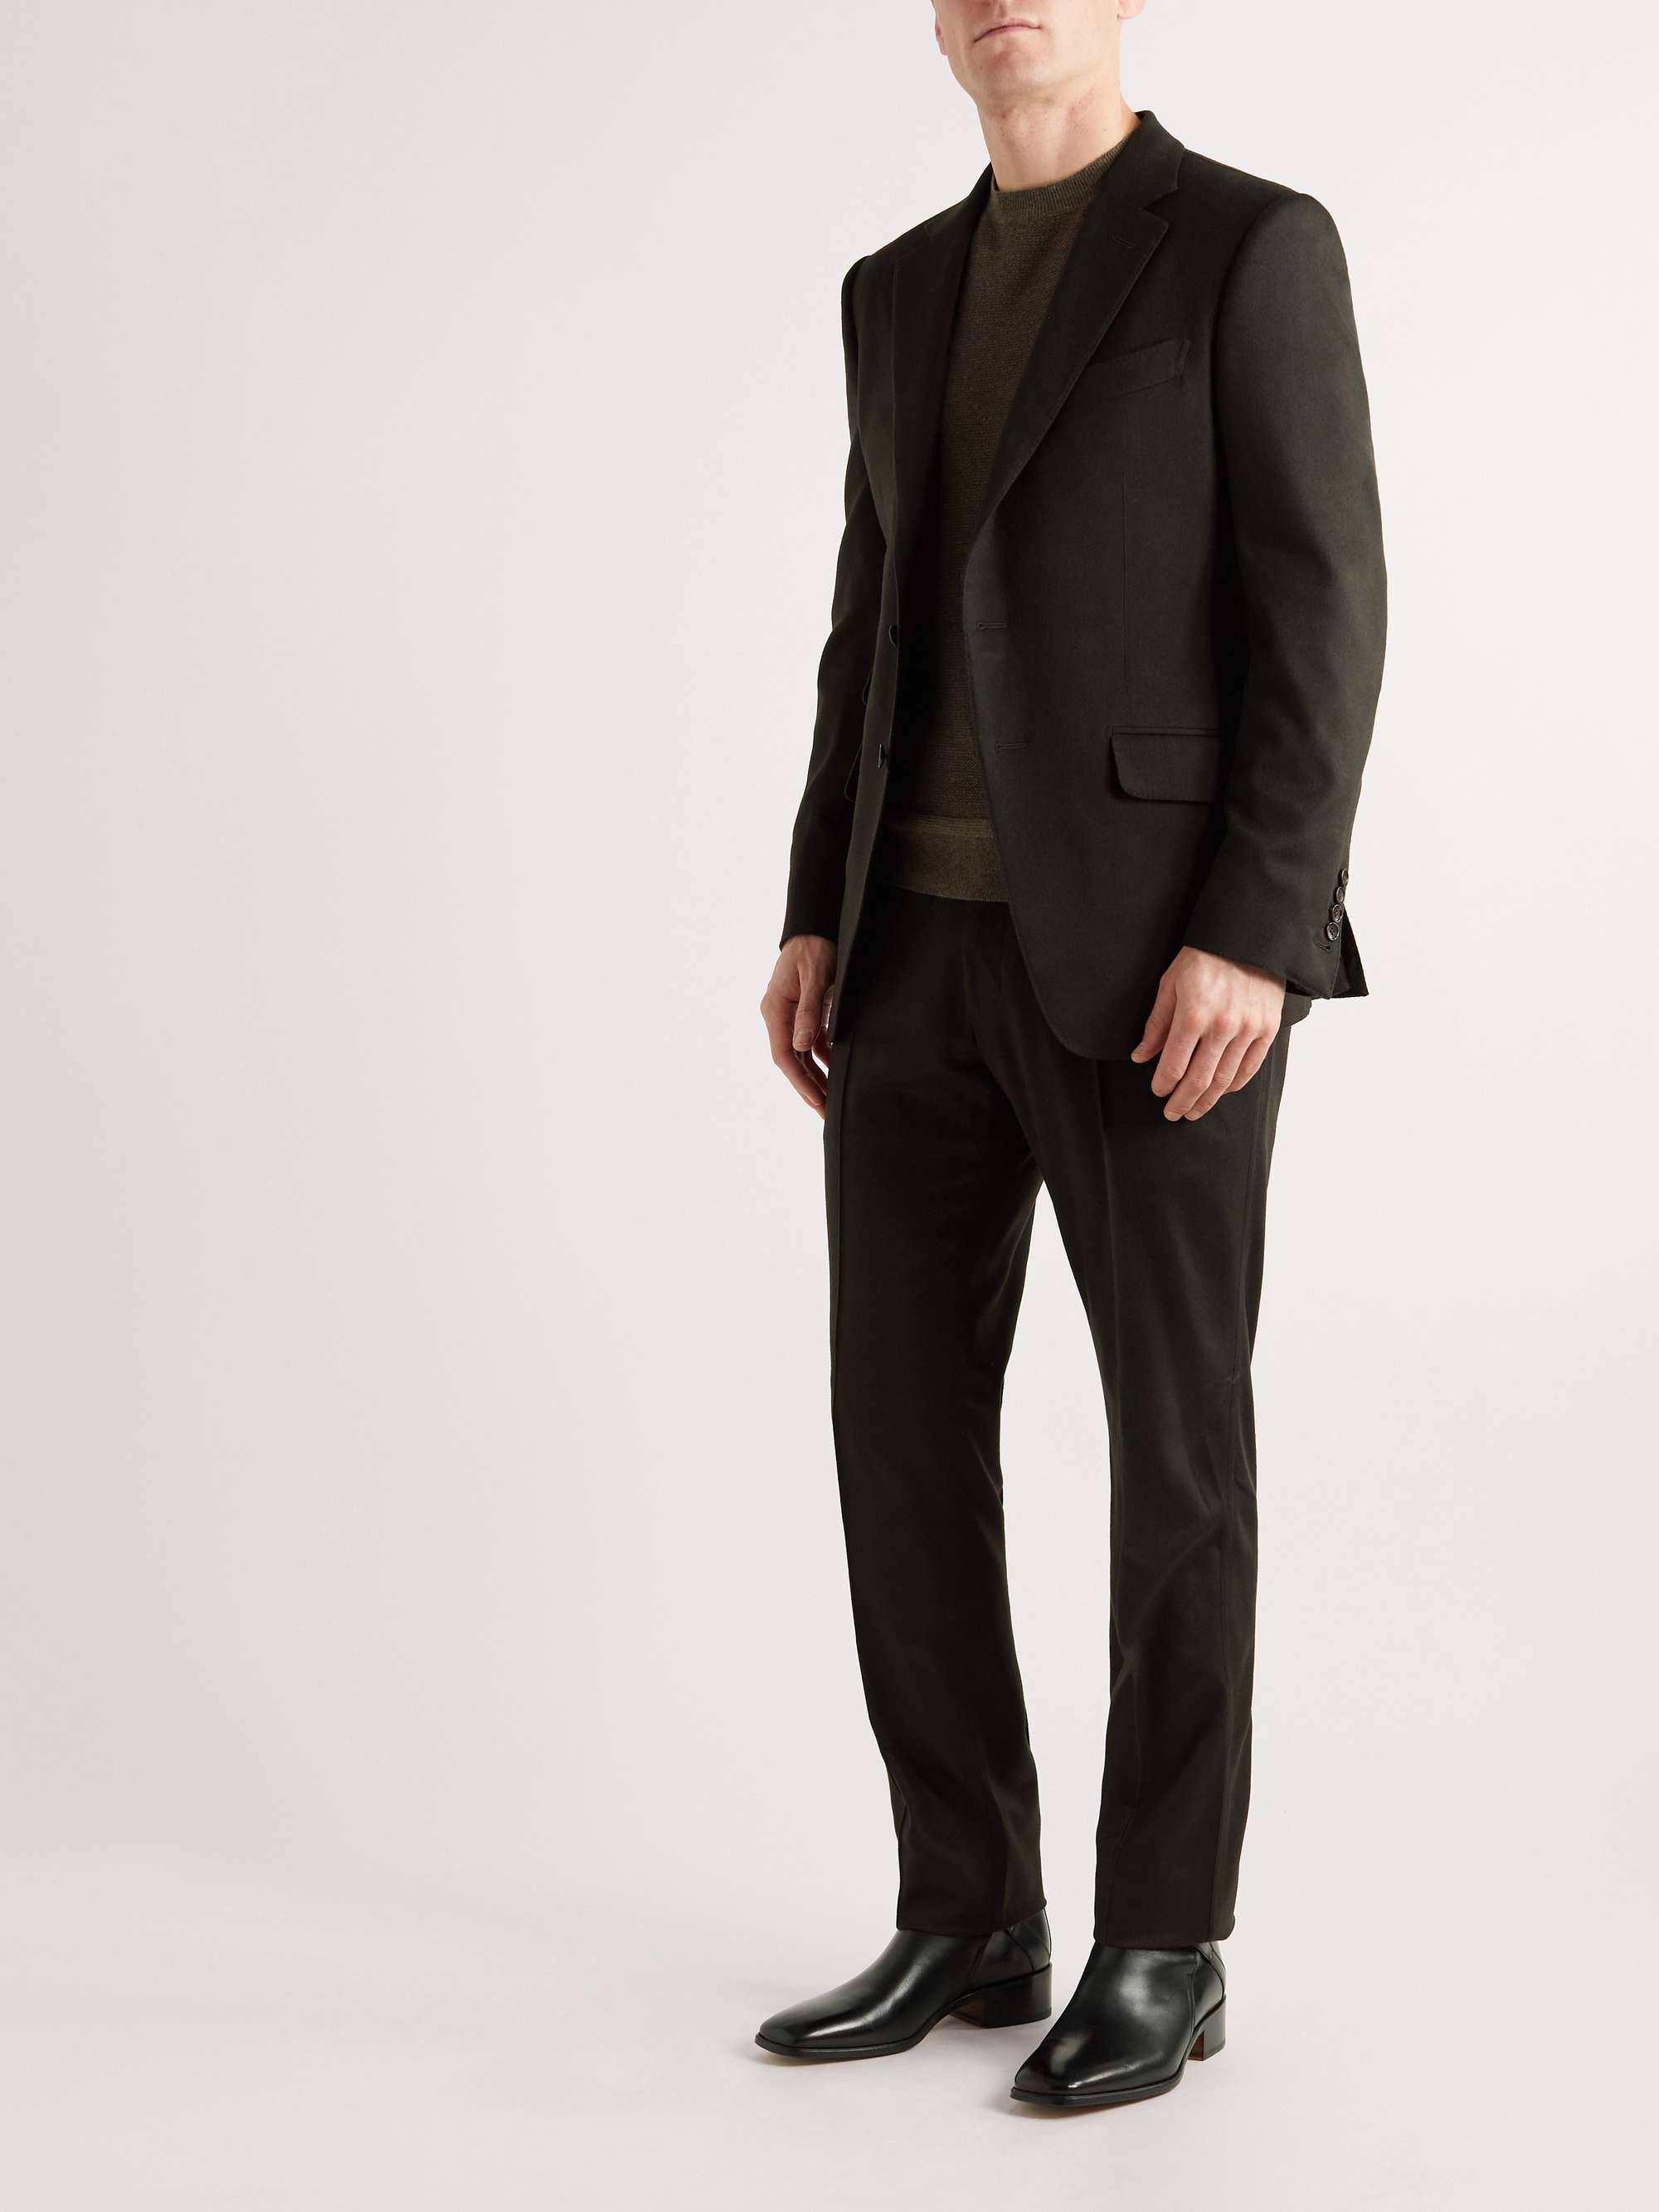 TOM FORD O'Connor Slim-Fit Unstructured Cashmere Suit Jacket for Men | MR  PORTER